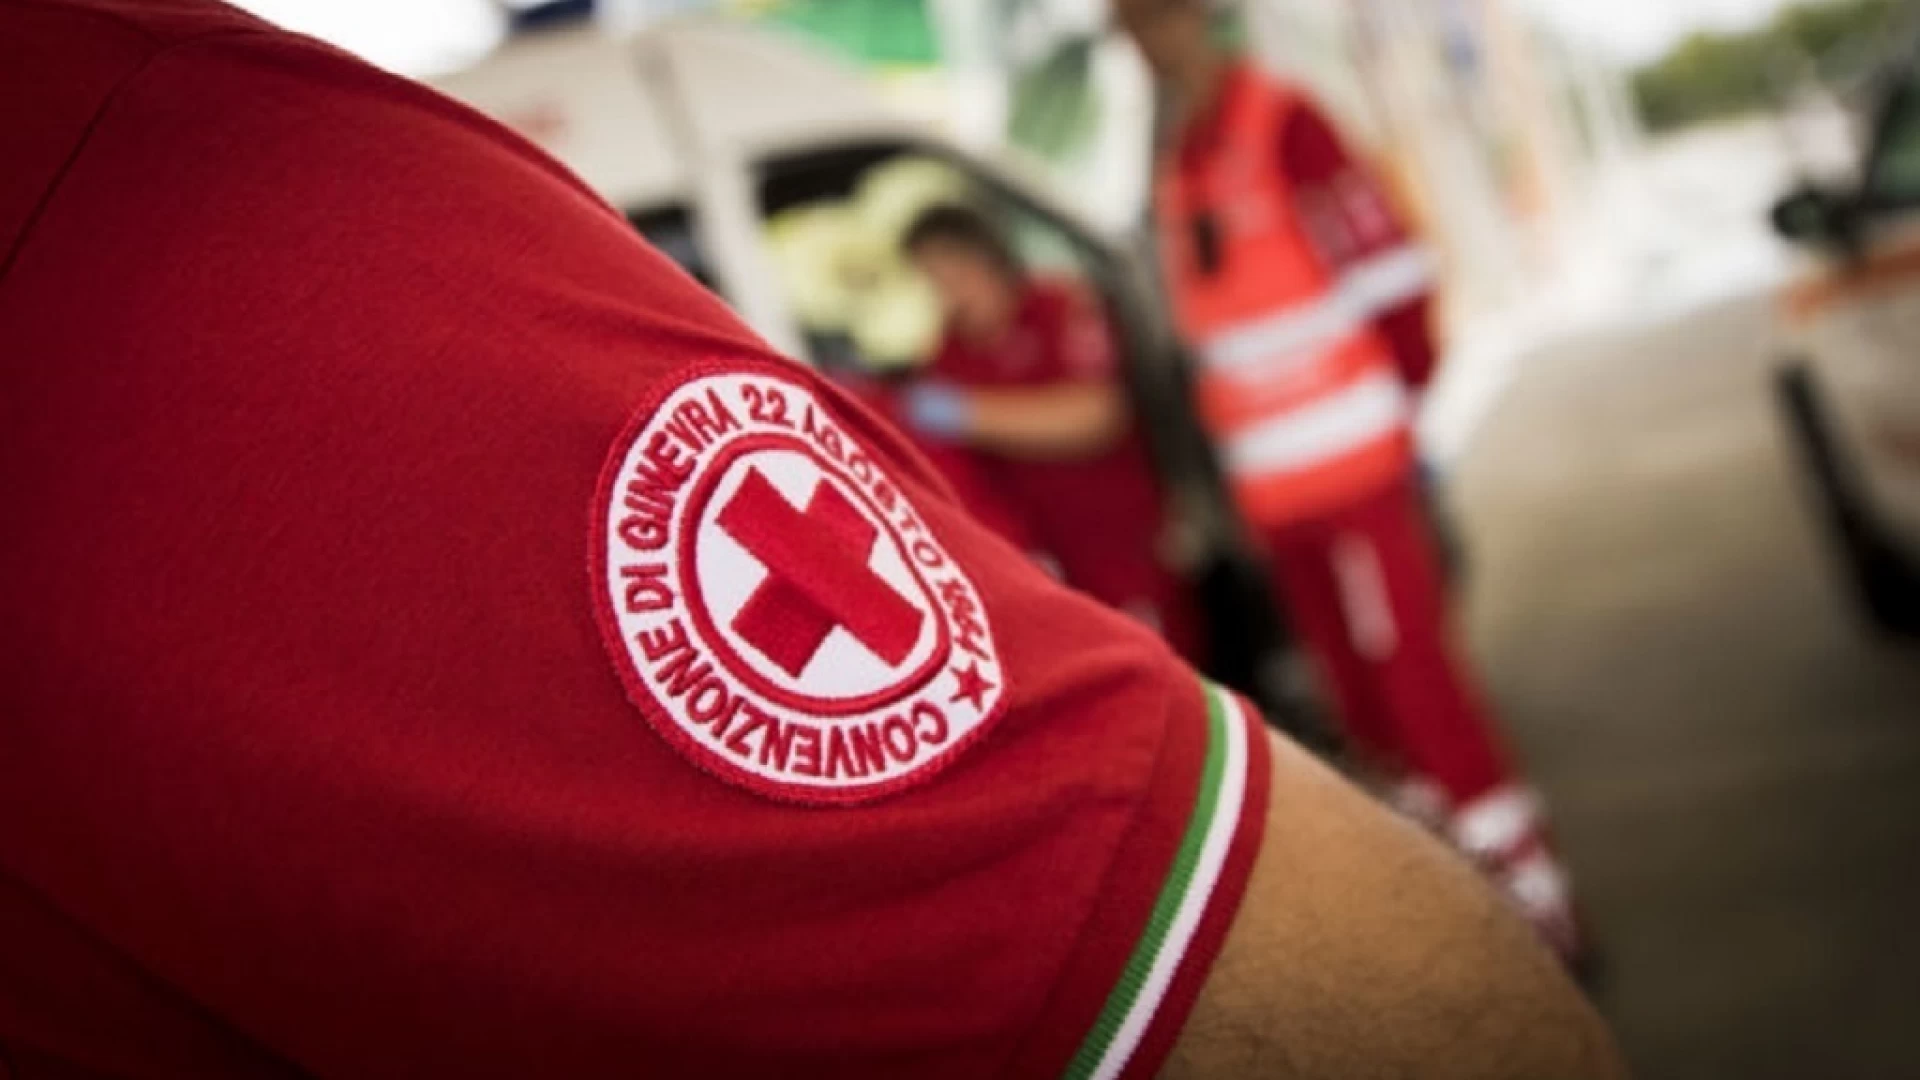 Buon sangue non mente , ad Isernia l'iniziativa della Croce Rossa